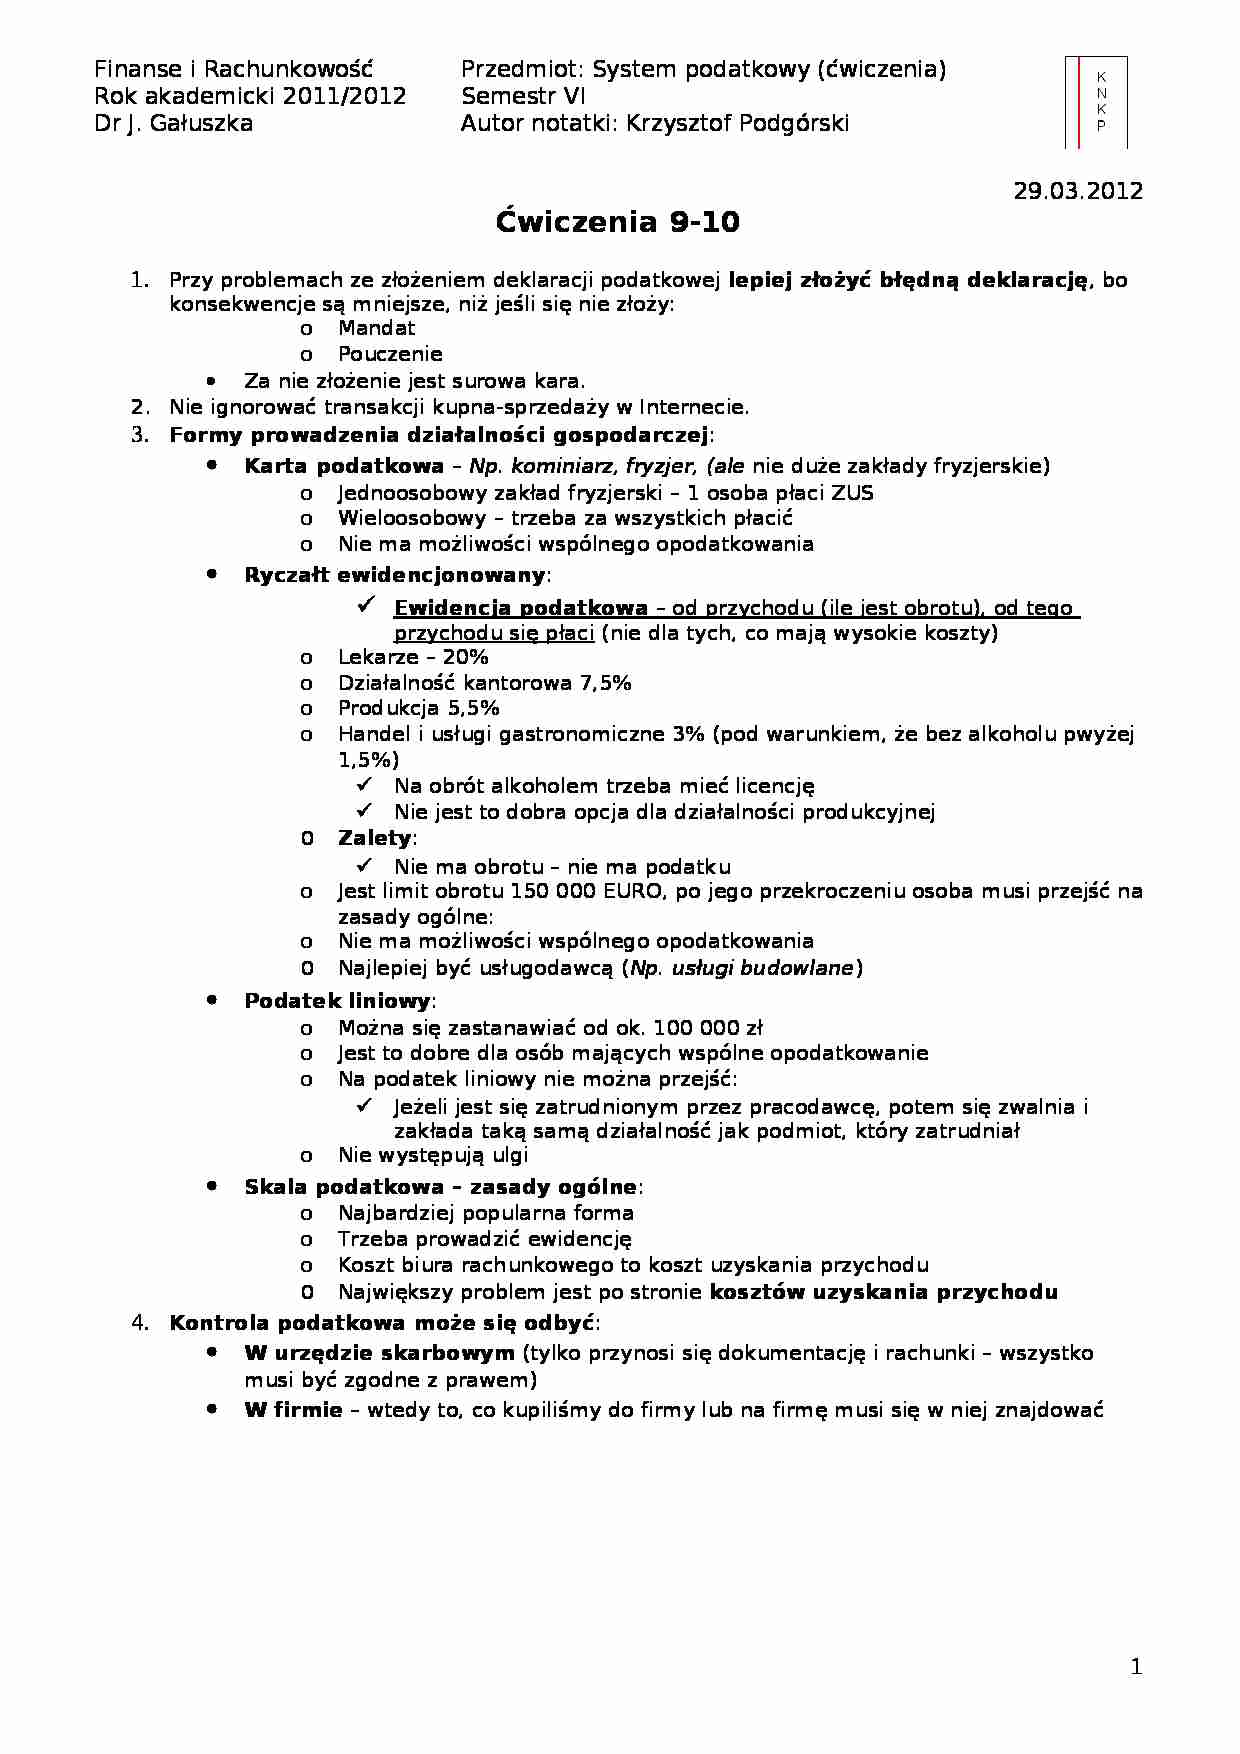 Formy prowadzenia działalności gospodarczej- ćwiczenia 9-10 - strona 1